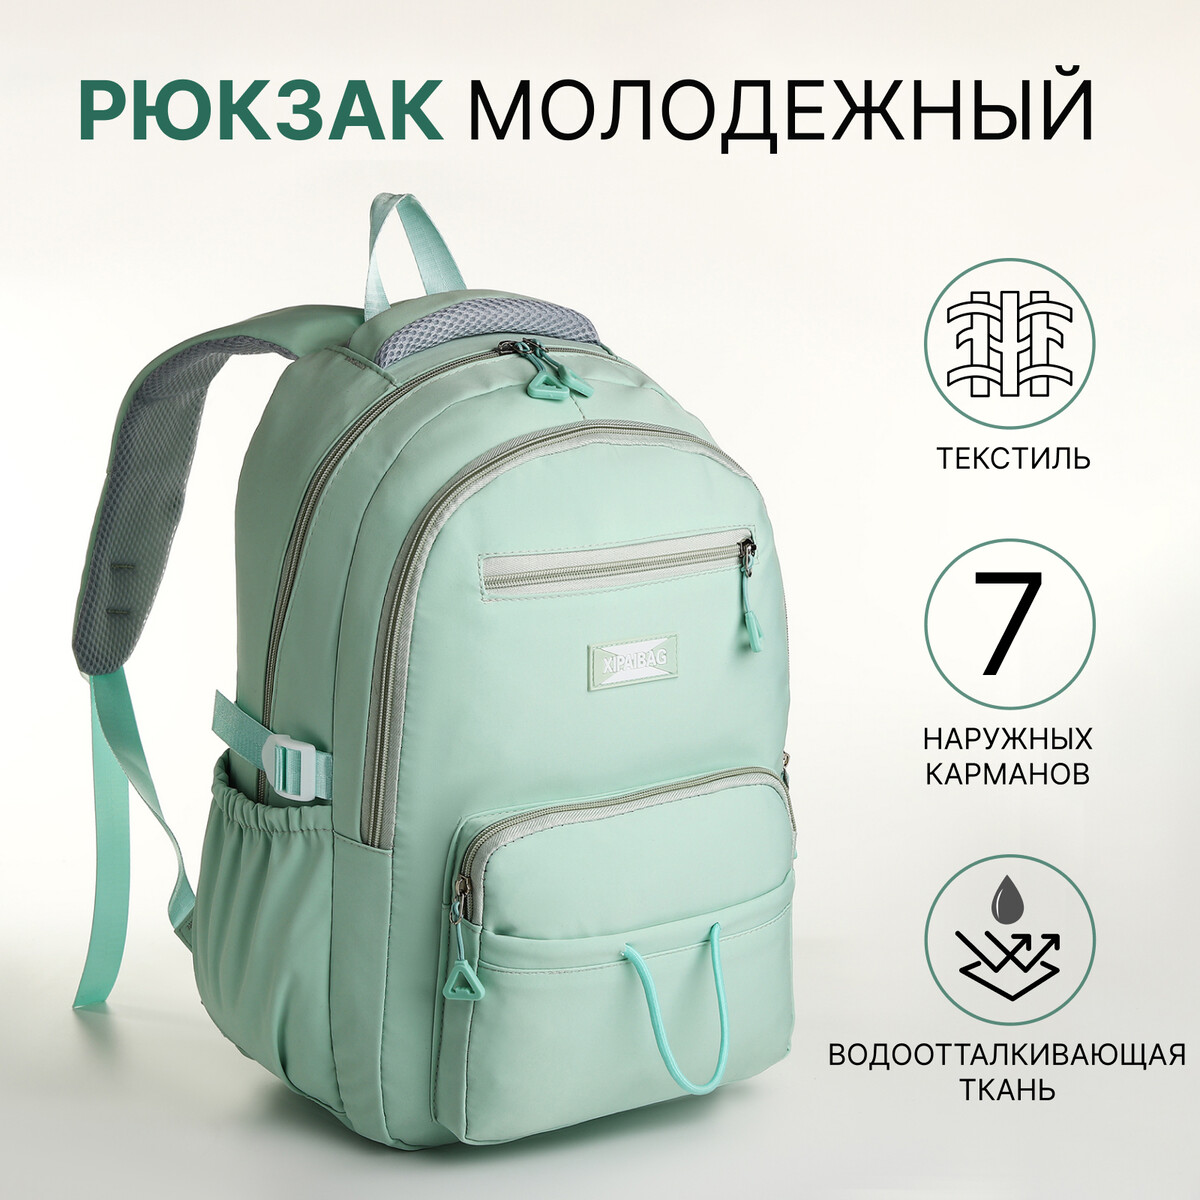 Рюкзак школьный из текстиля на молнии, 7 карманов, цвет зеленый